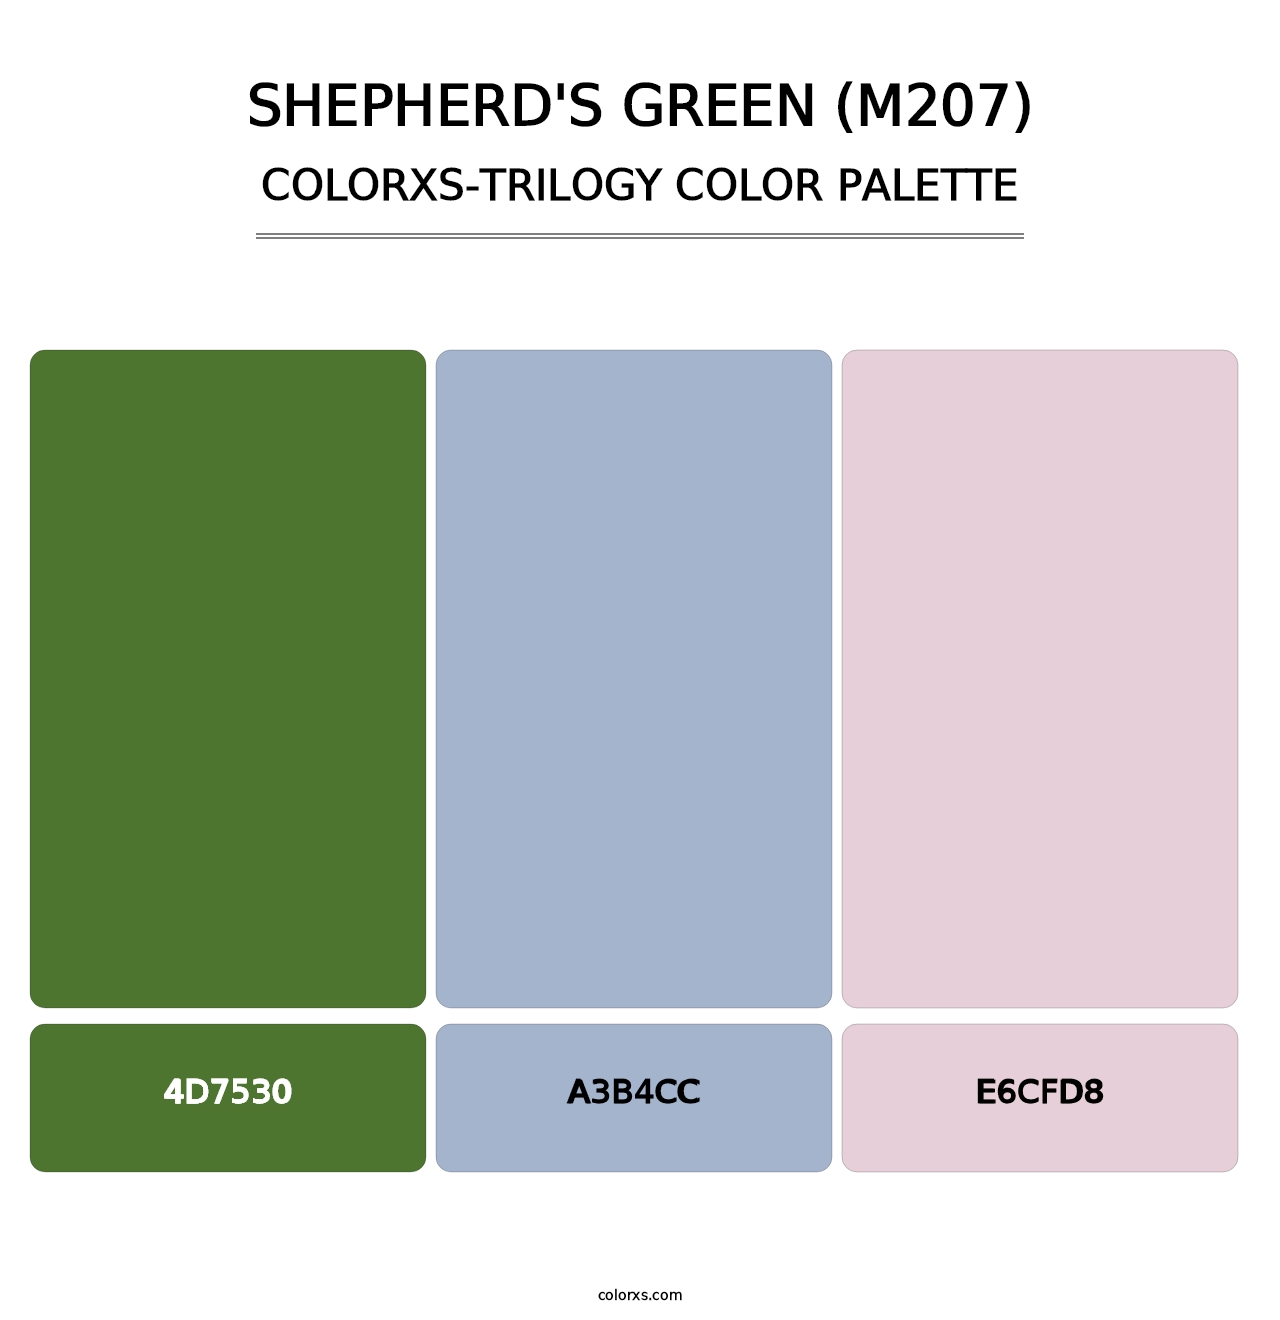 Shepherd's Green (M207) - Colorxs Trilogy Palette